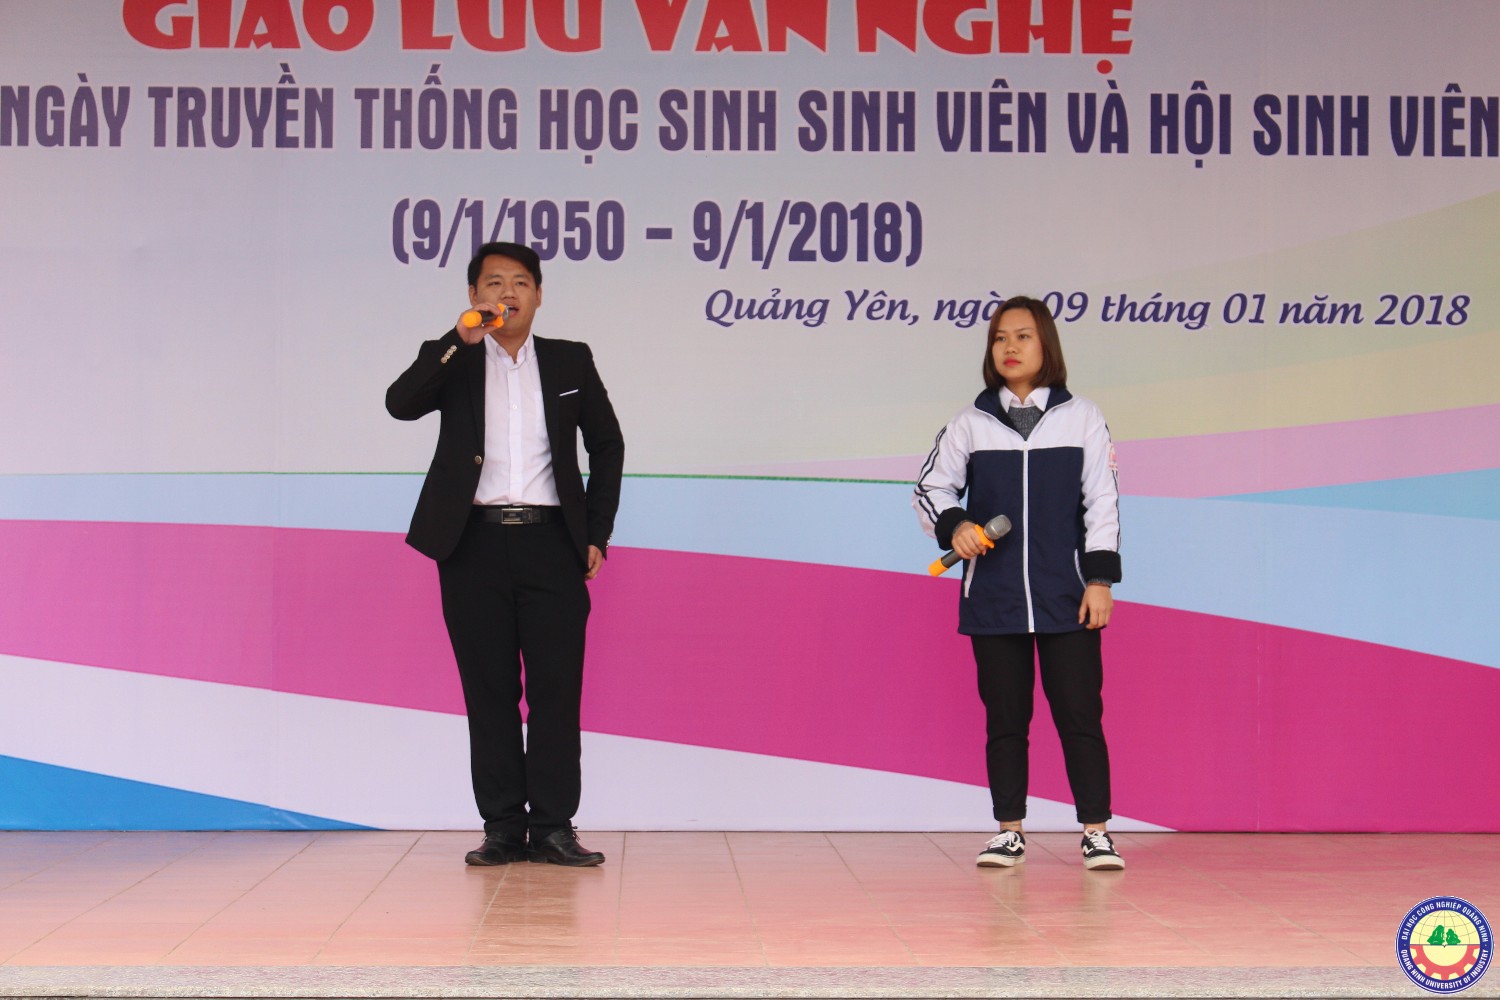 Giao lưu văn nghệ - tuyển sinh giữa trường ĐHCNQN và trường THPT Bạch Đằng (Quảng Yên) 9.1..2018